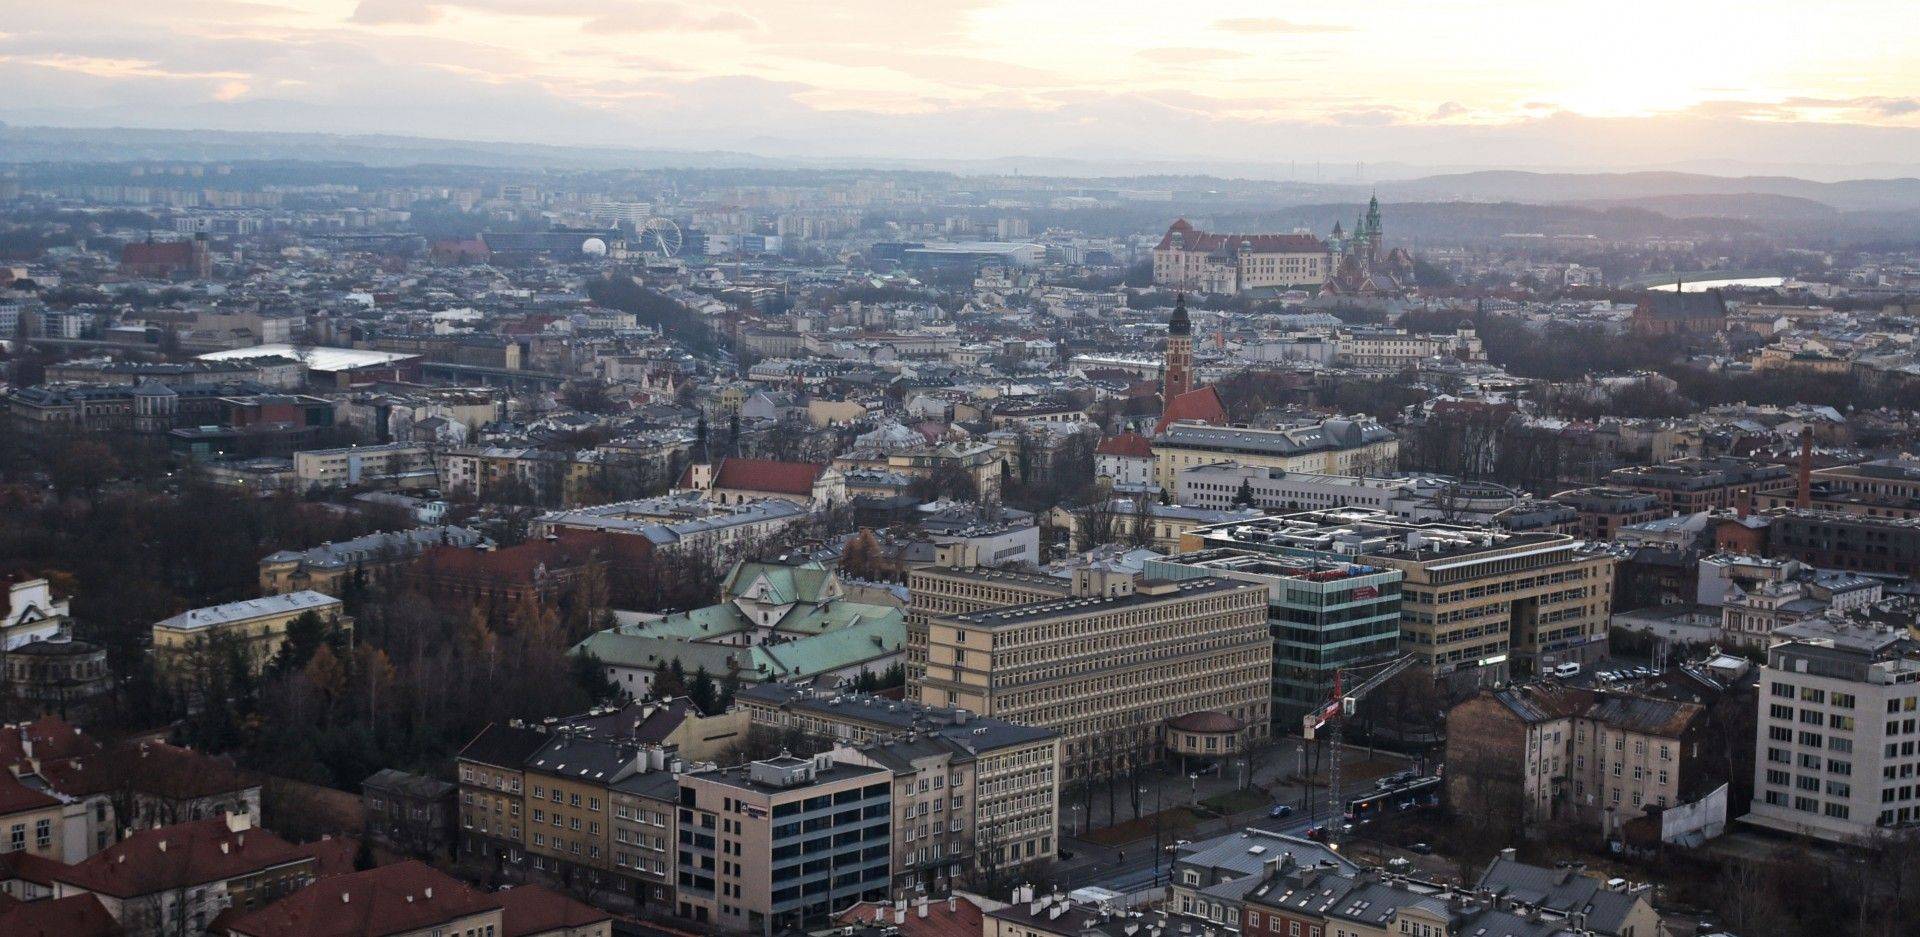 Amerykańska firma oceniła wiarygodność kredytową Krakowa: "miasto daje radę"